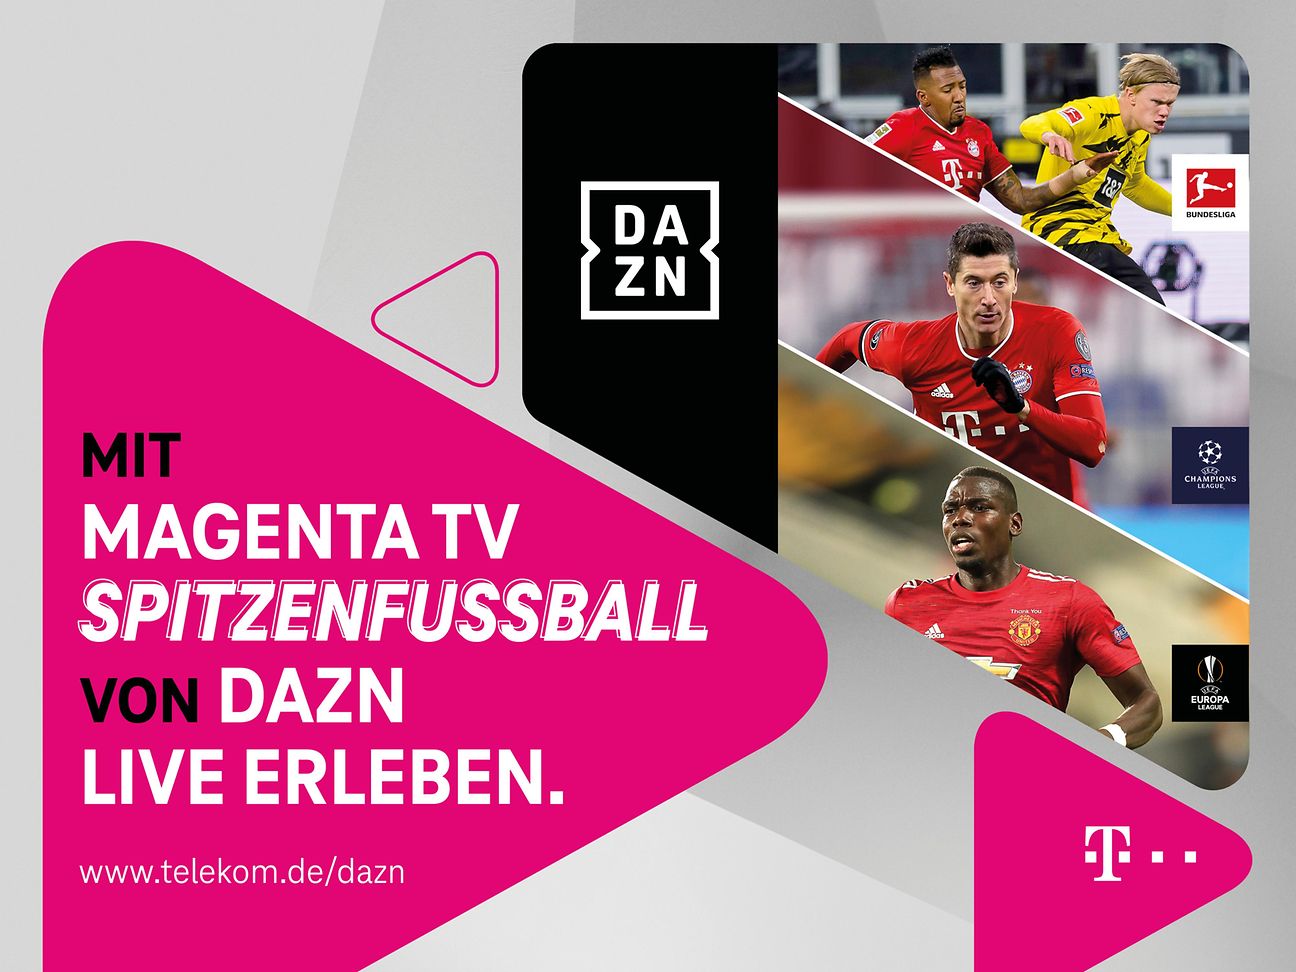 DAZN und MagentaTV erweitern Kooperation Mehr Vorteile für Kund*innen Deutsche Telekom